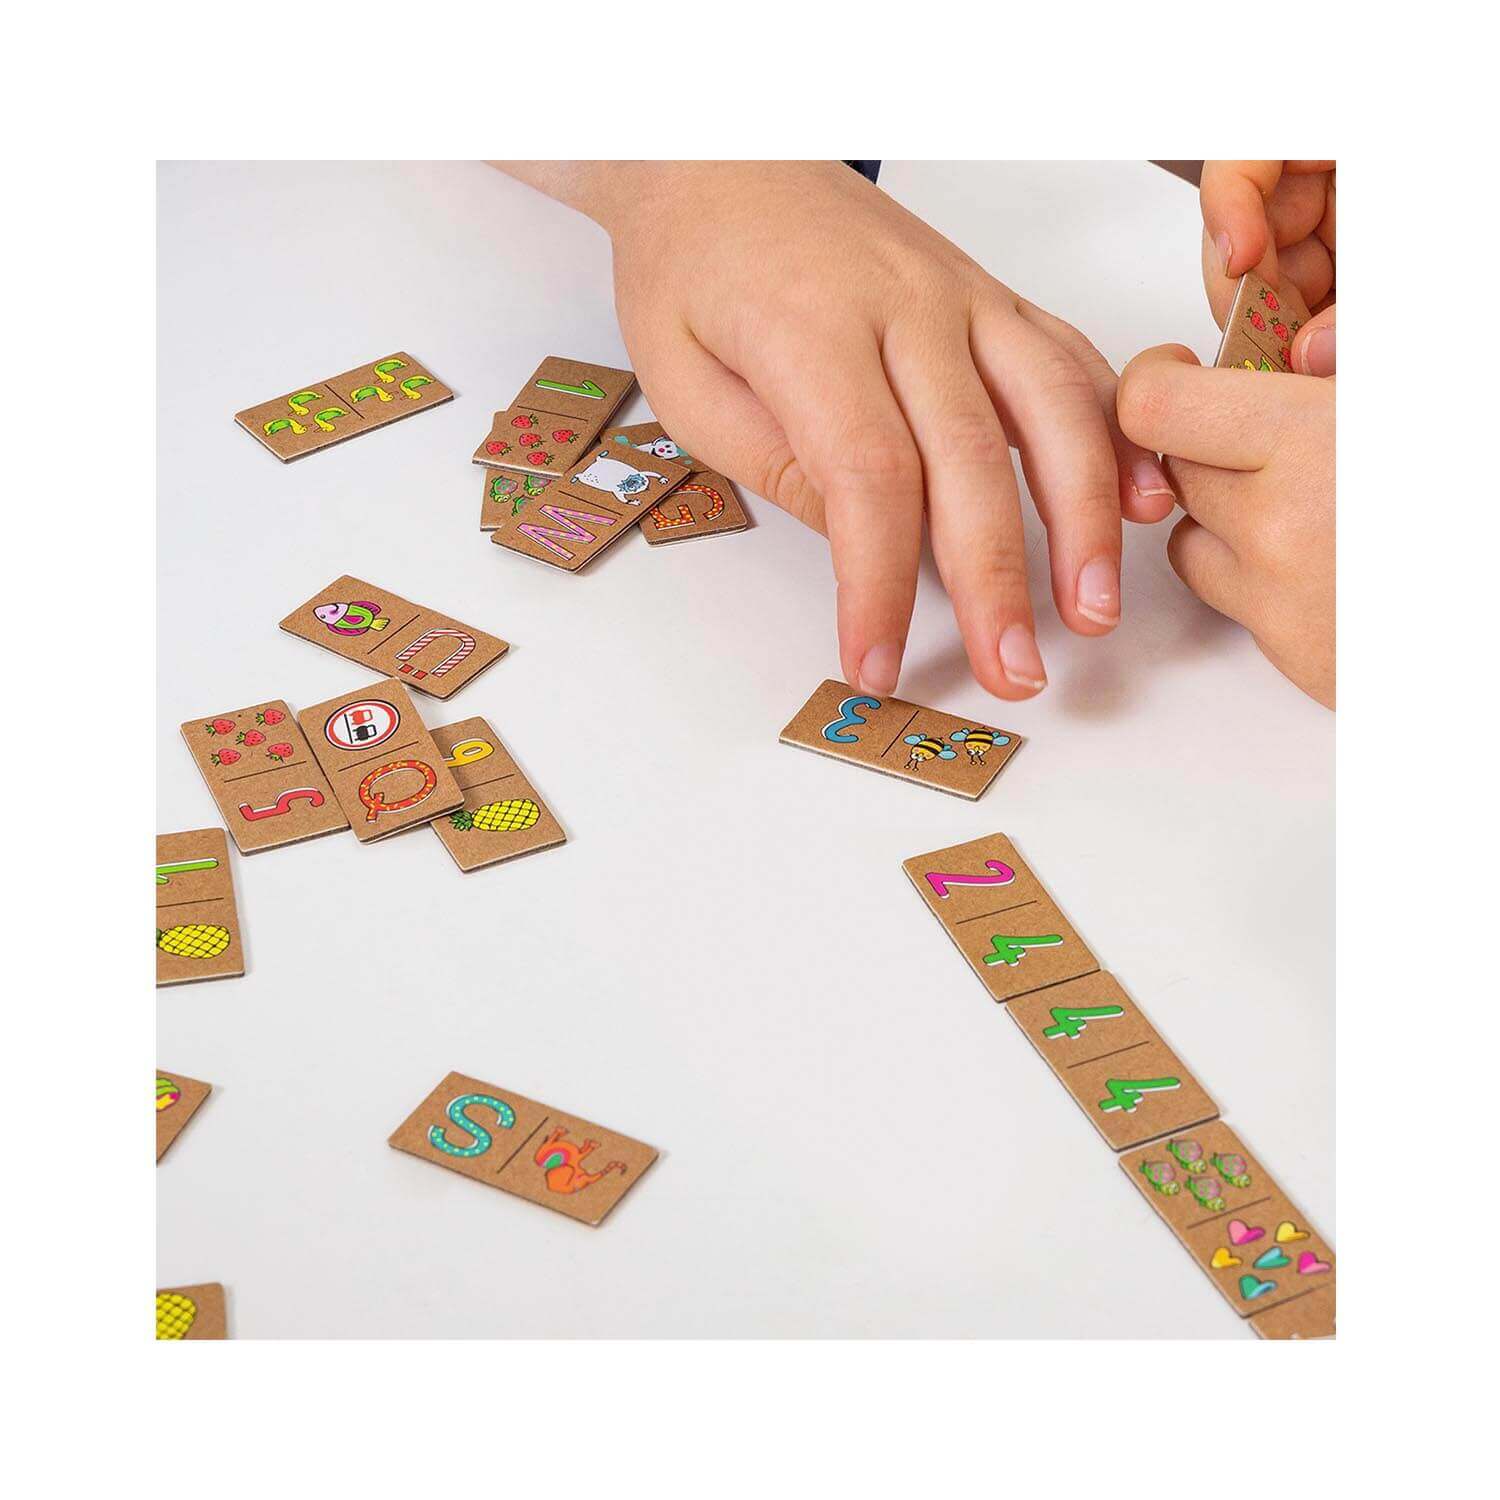 ABC Domino Lernspiel ABC & Zahlen, spielerisches Lernen von Zahlen und Buchstaben, 28 Karten